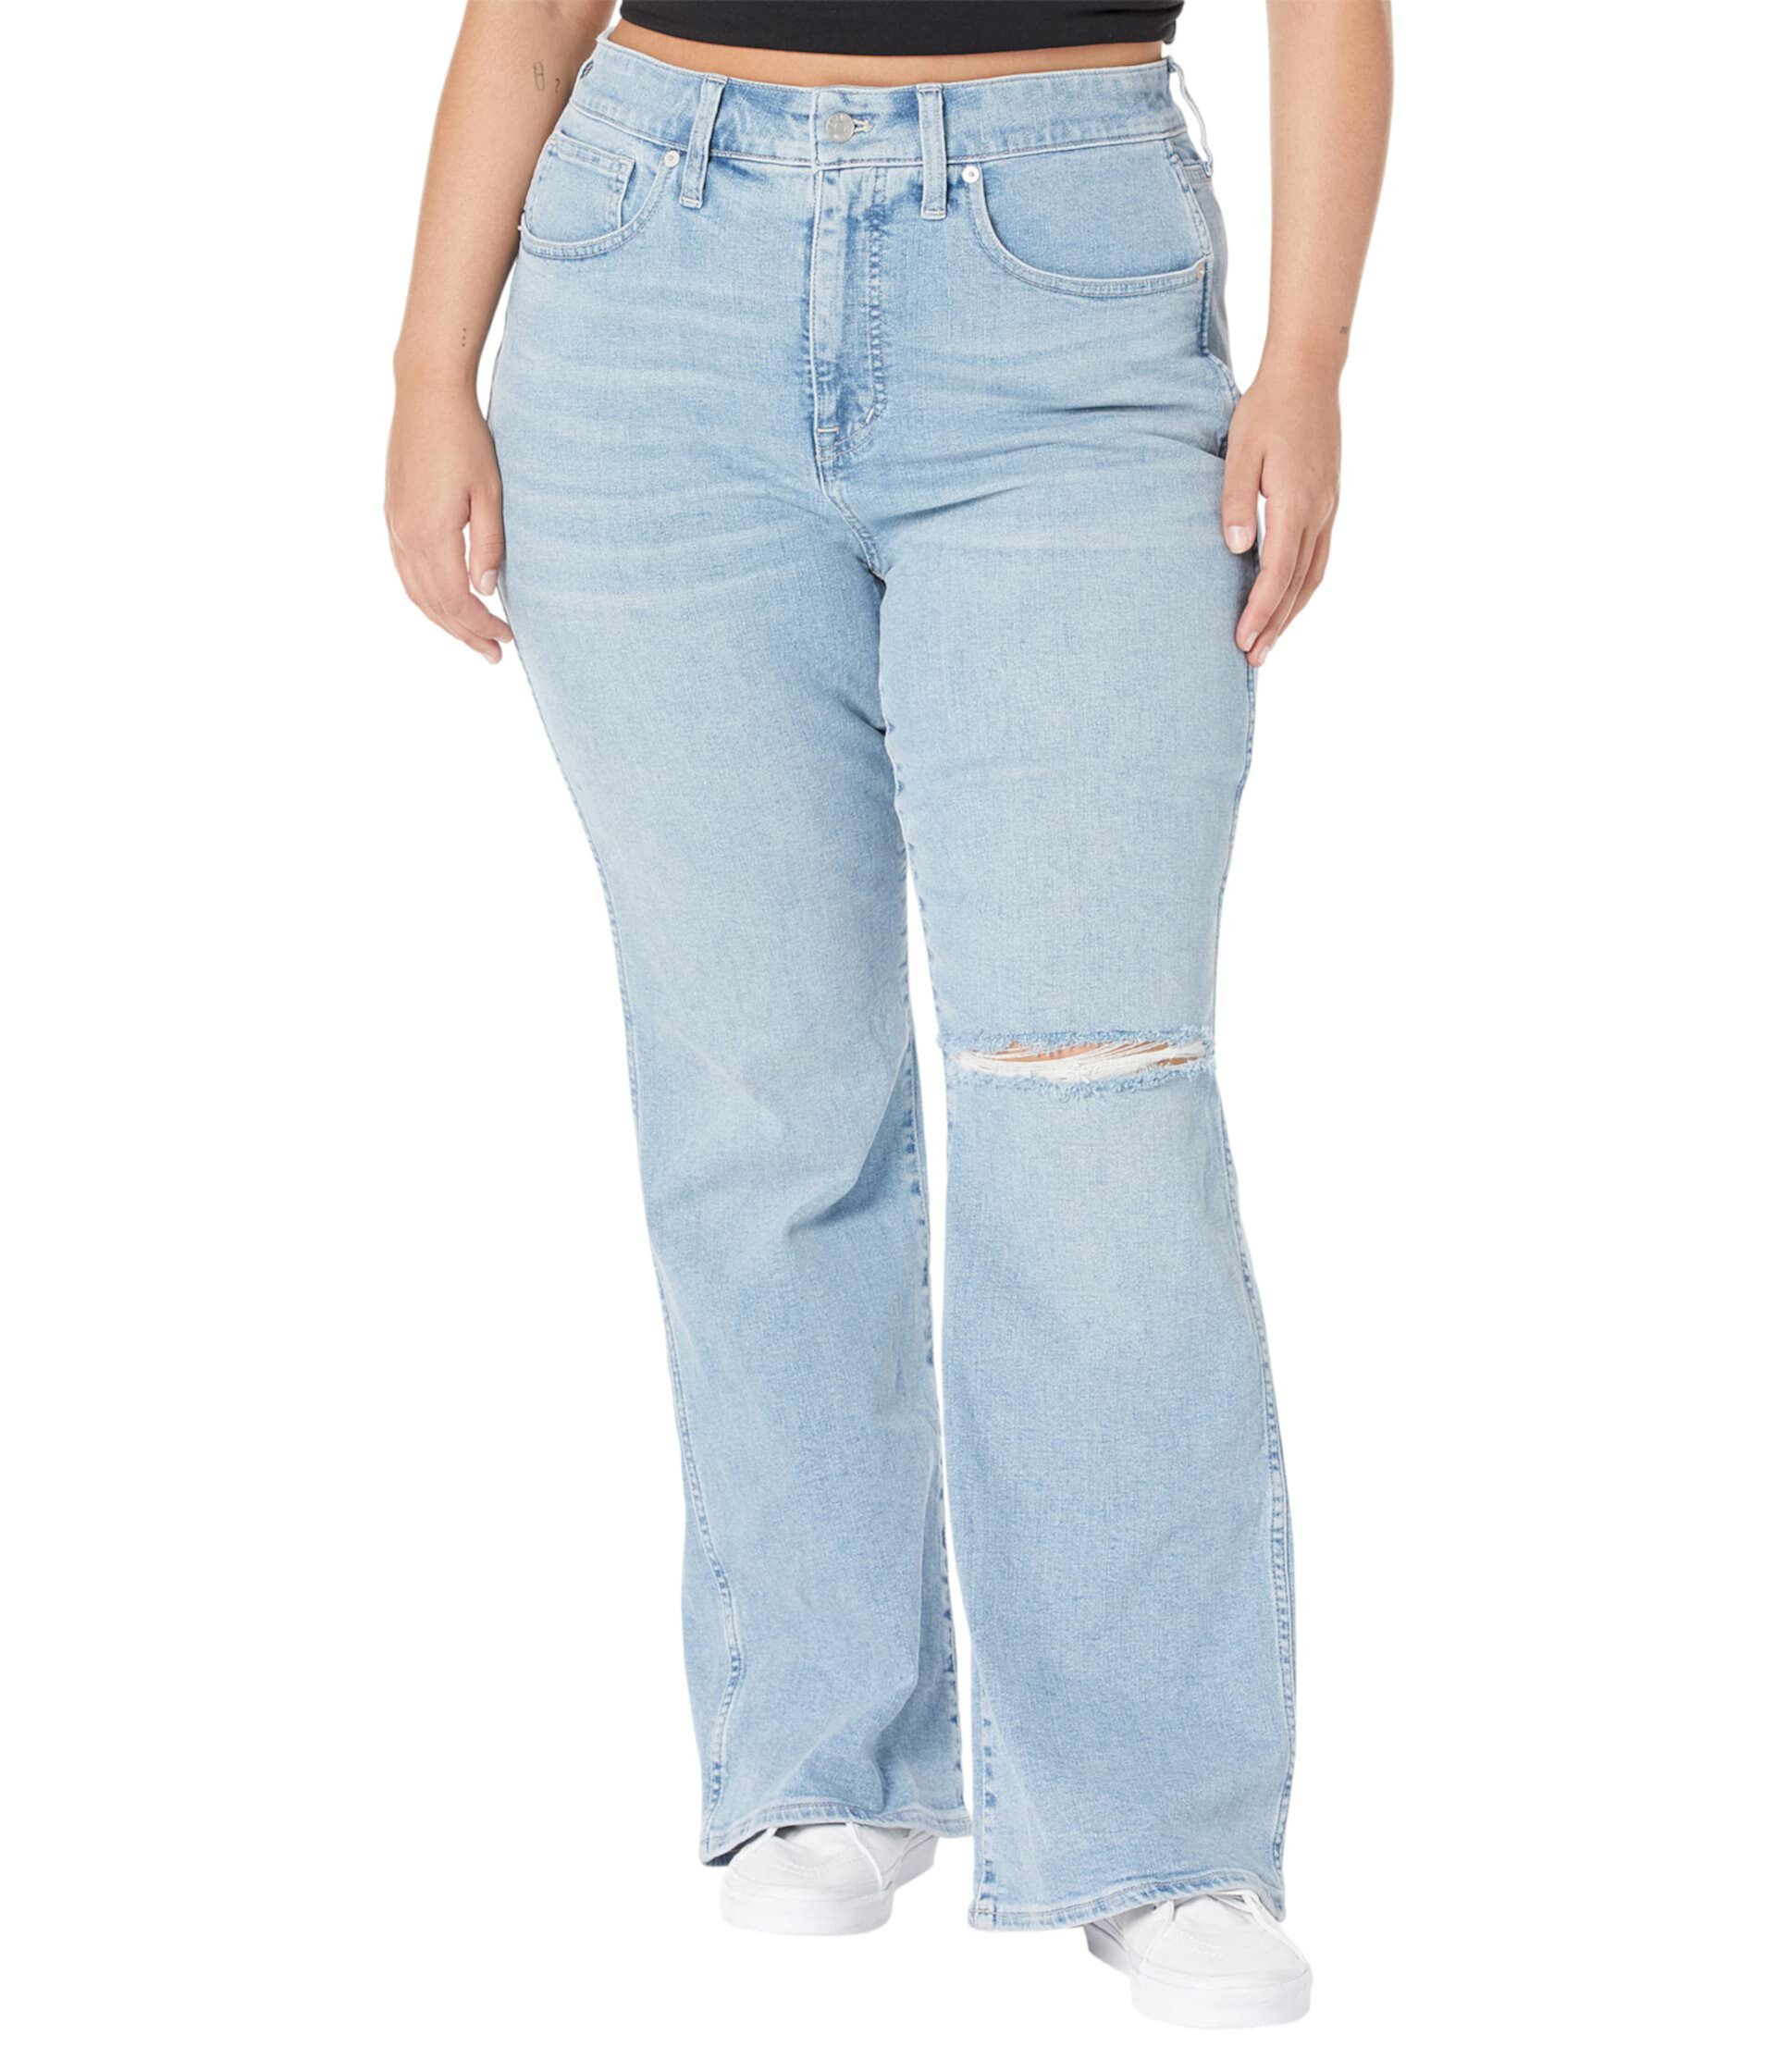 Расклешенные джинсы Leigh Retro больших размеров светлого цвета из конопли Madewell